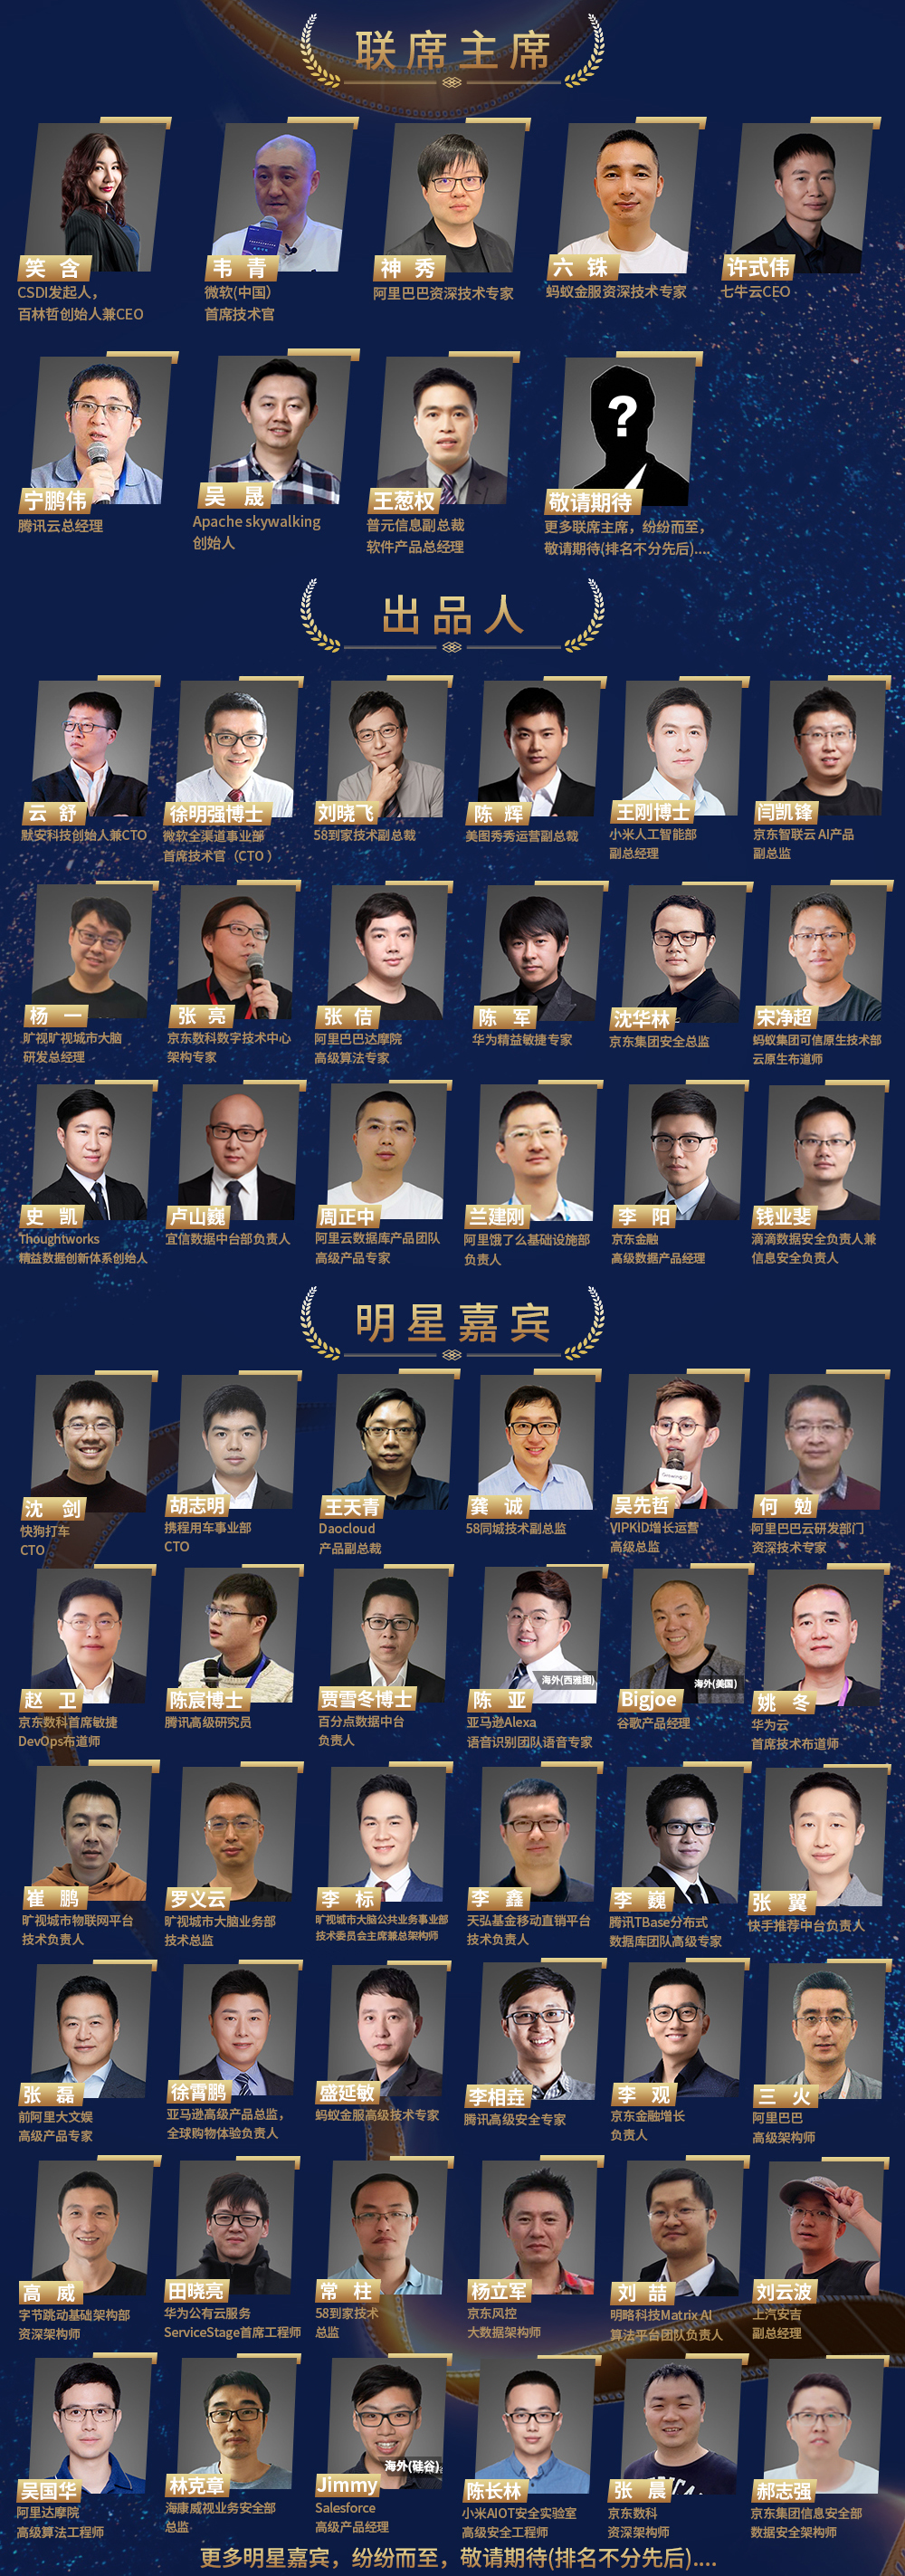 CSDI 2021中国软件研发管理行业技术峰会_门票优惠_活动家官网报名